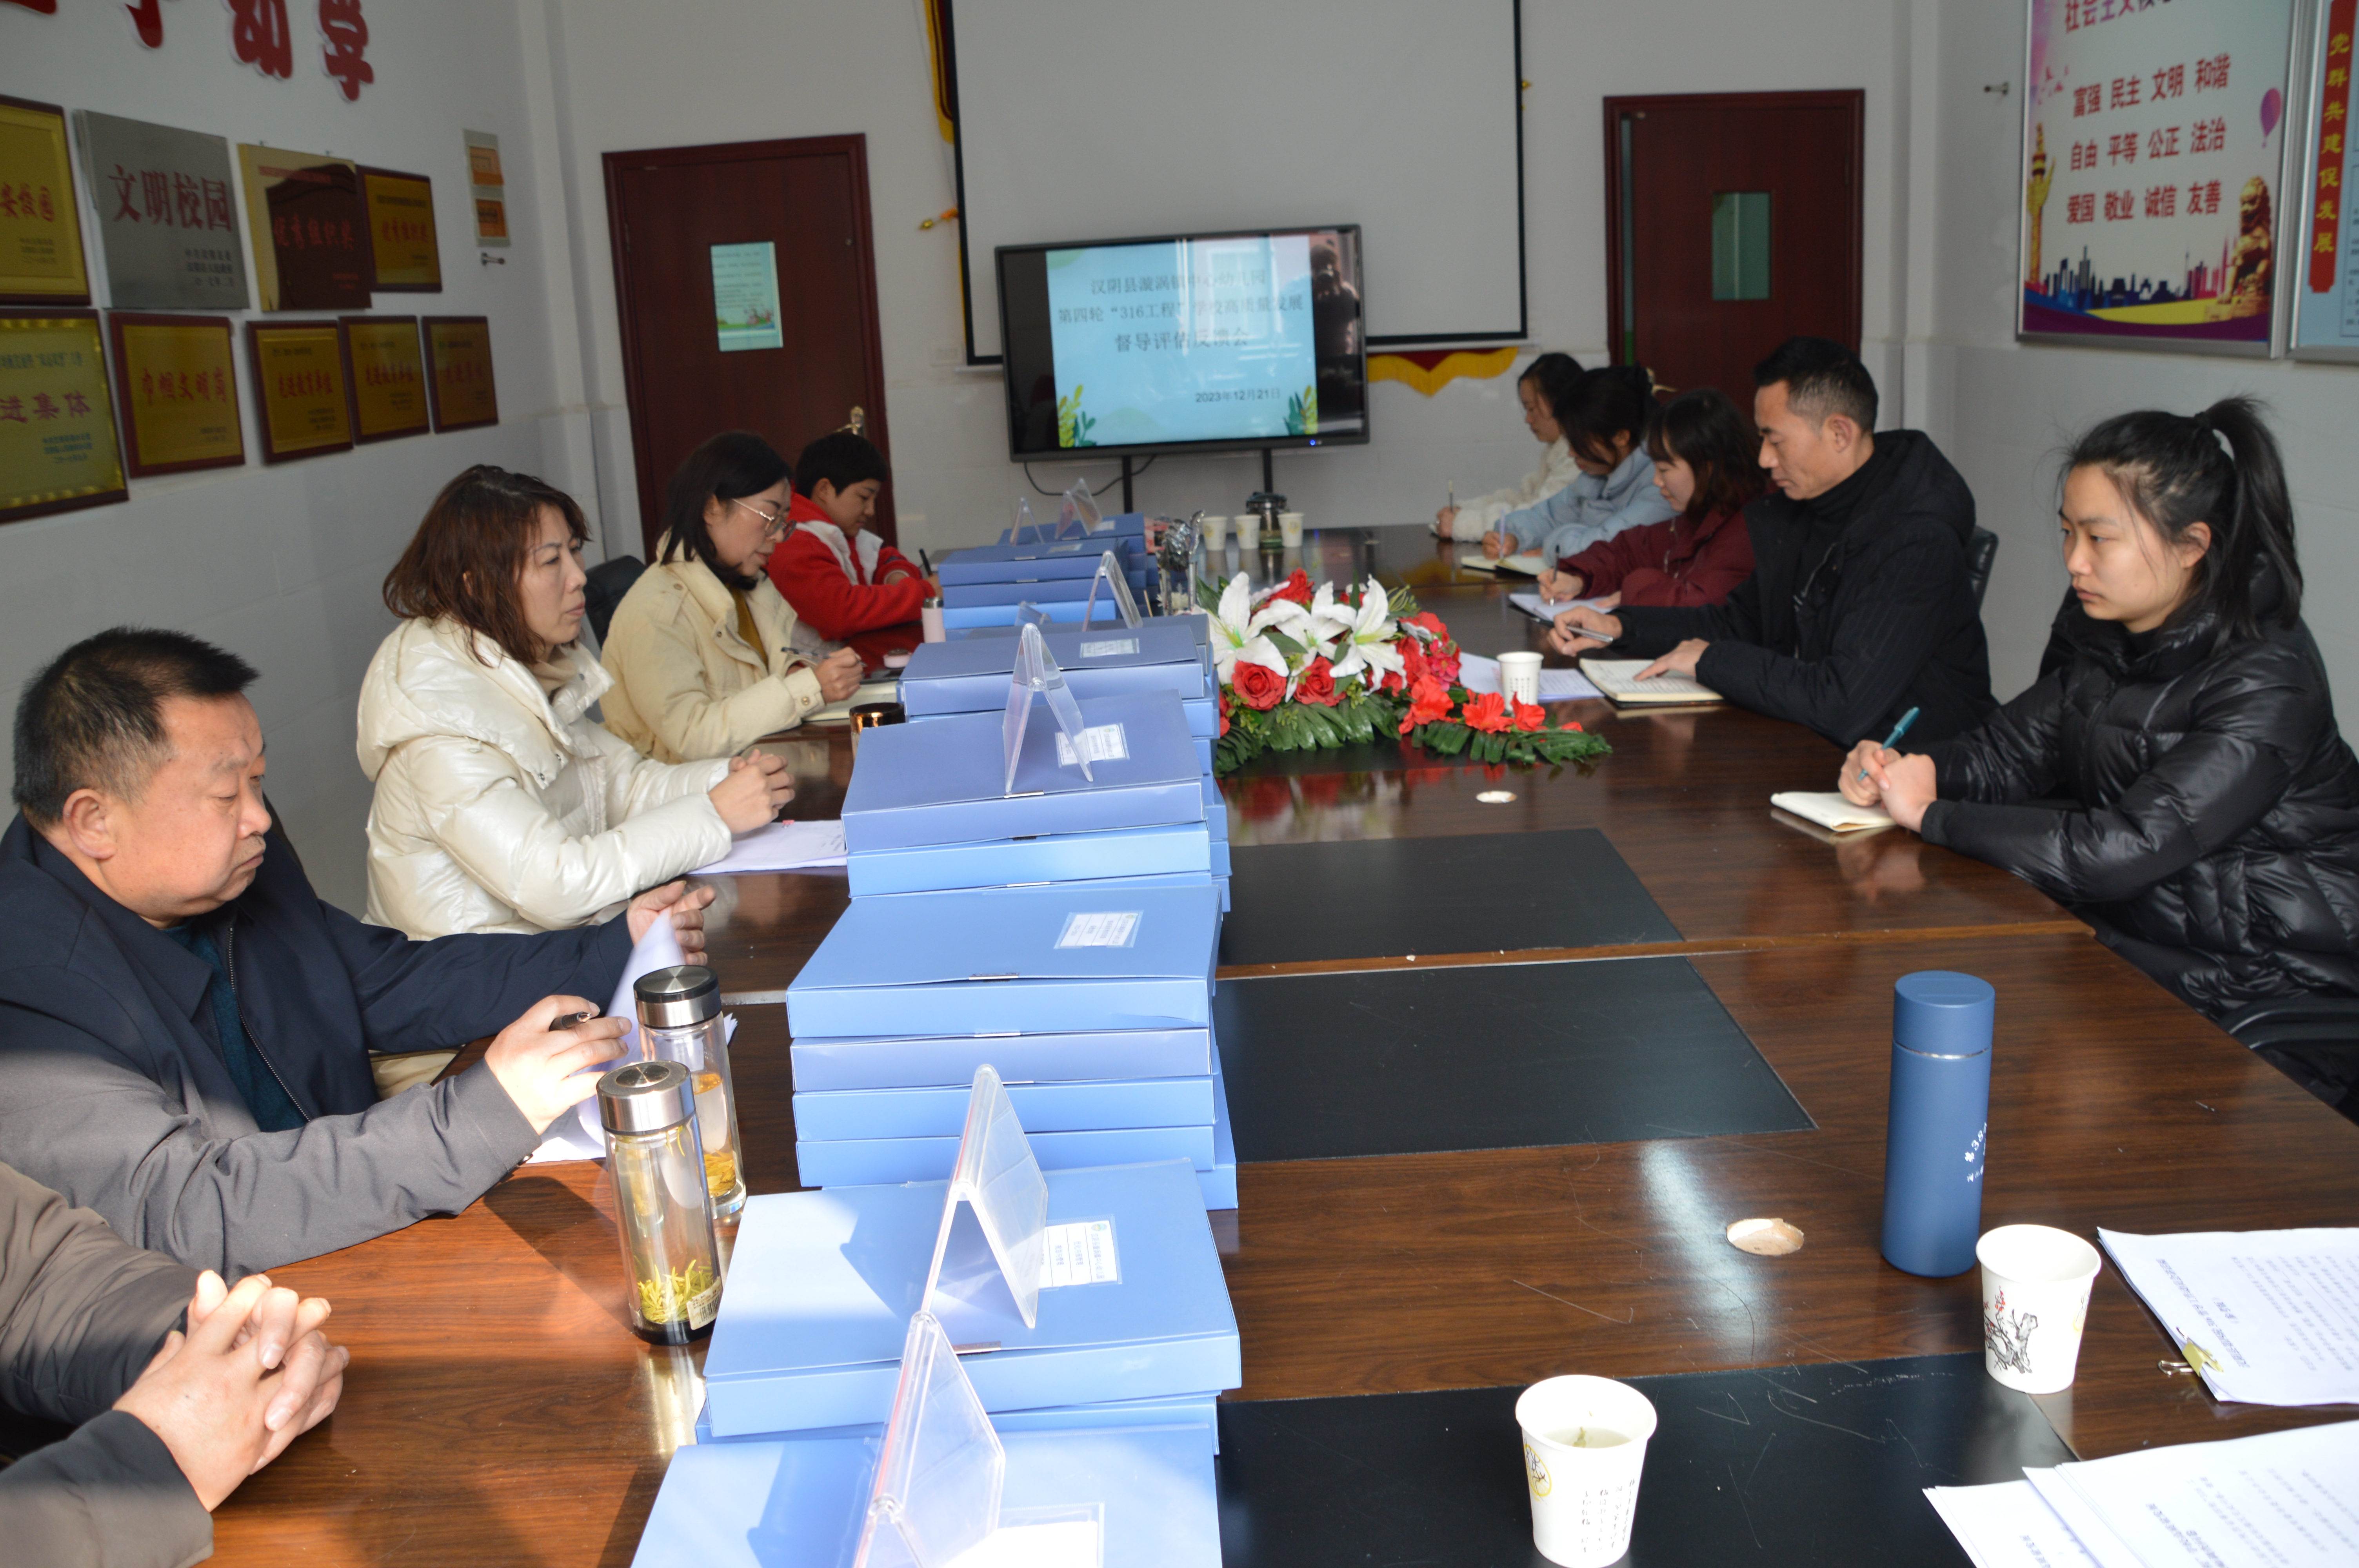 汉阴县漩涡镇中心幼儿园迎接第四轮“316工程”督导评估检查